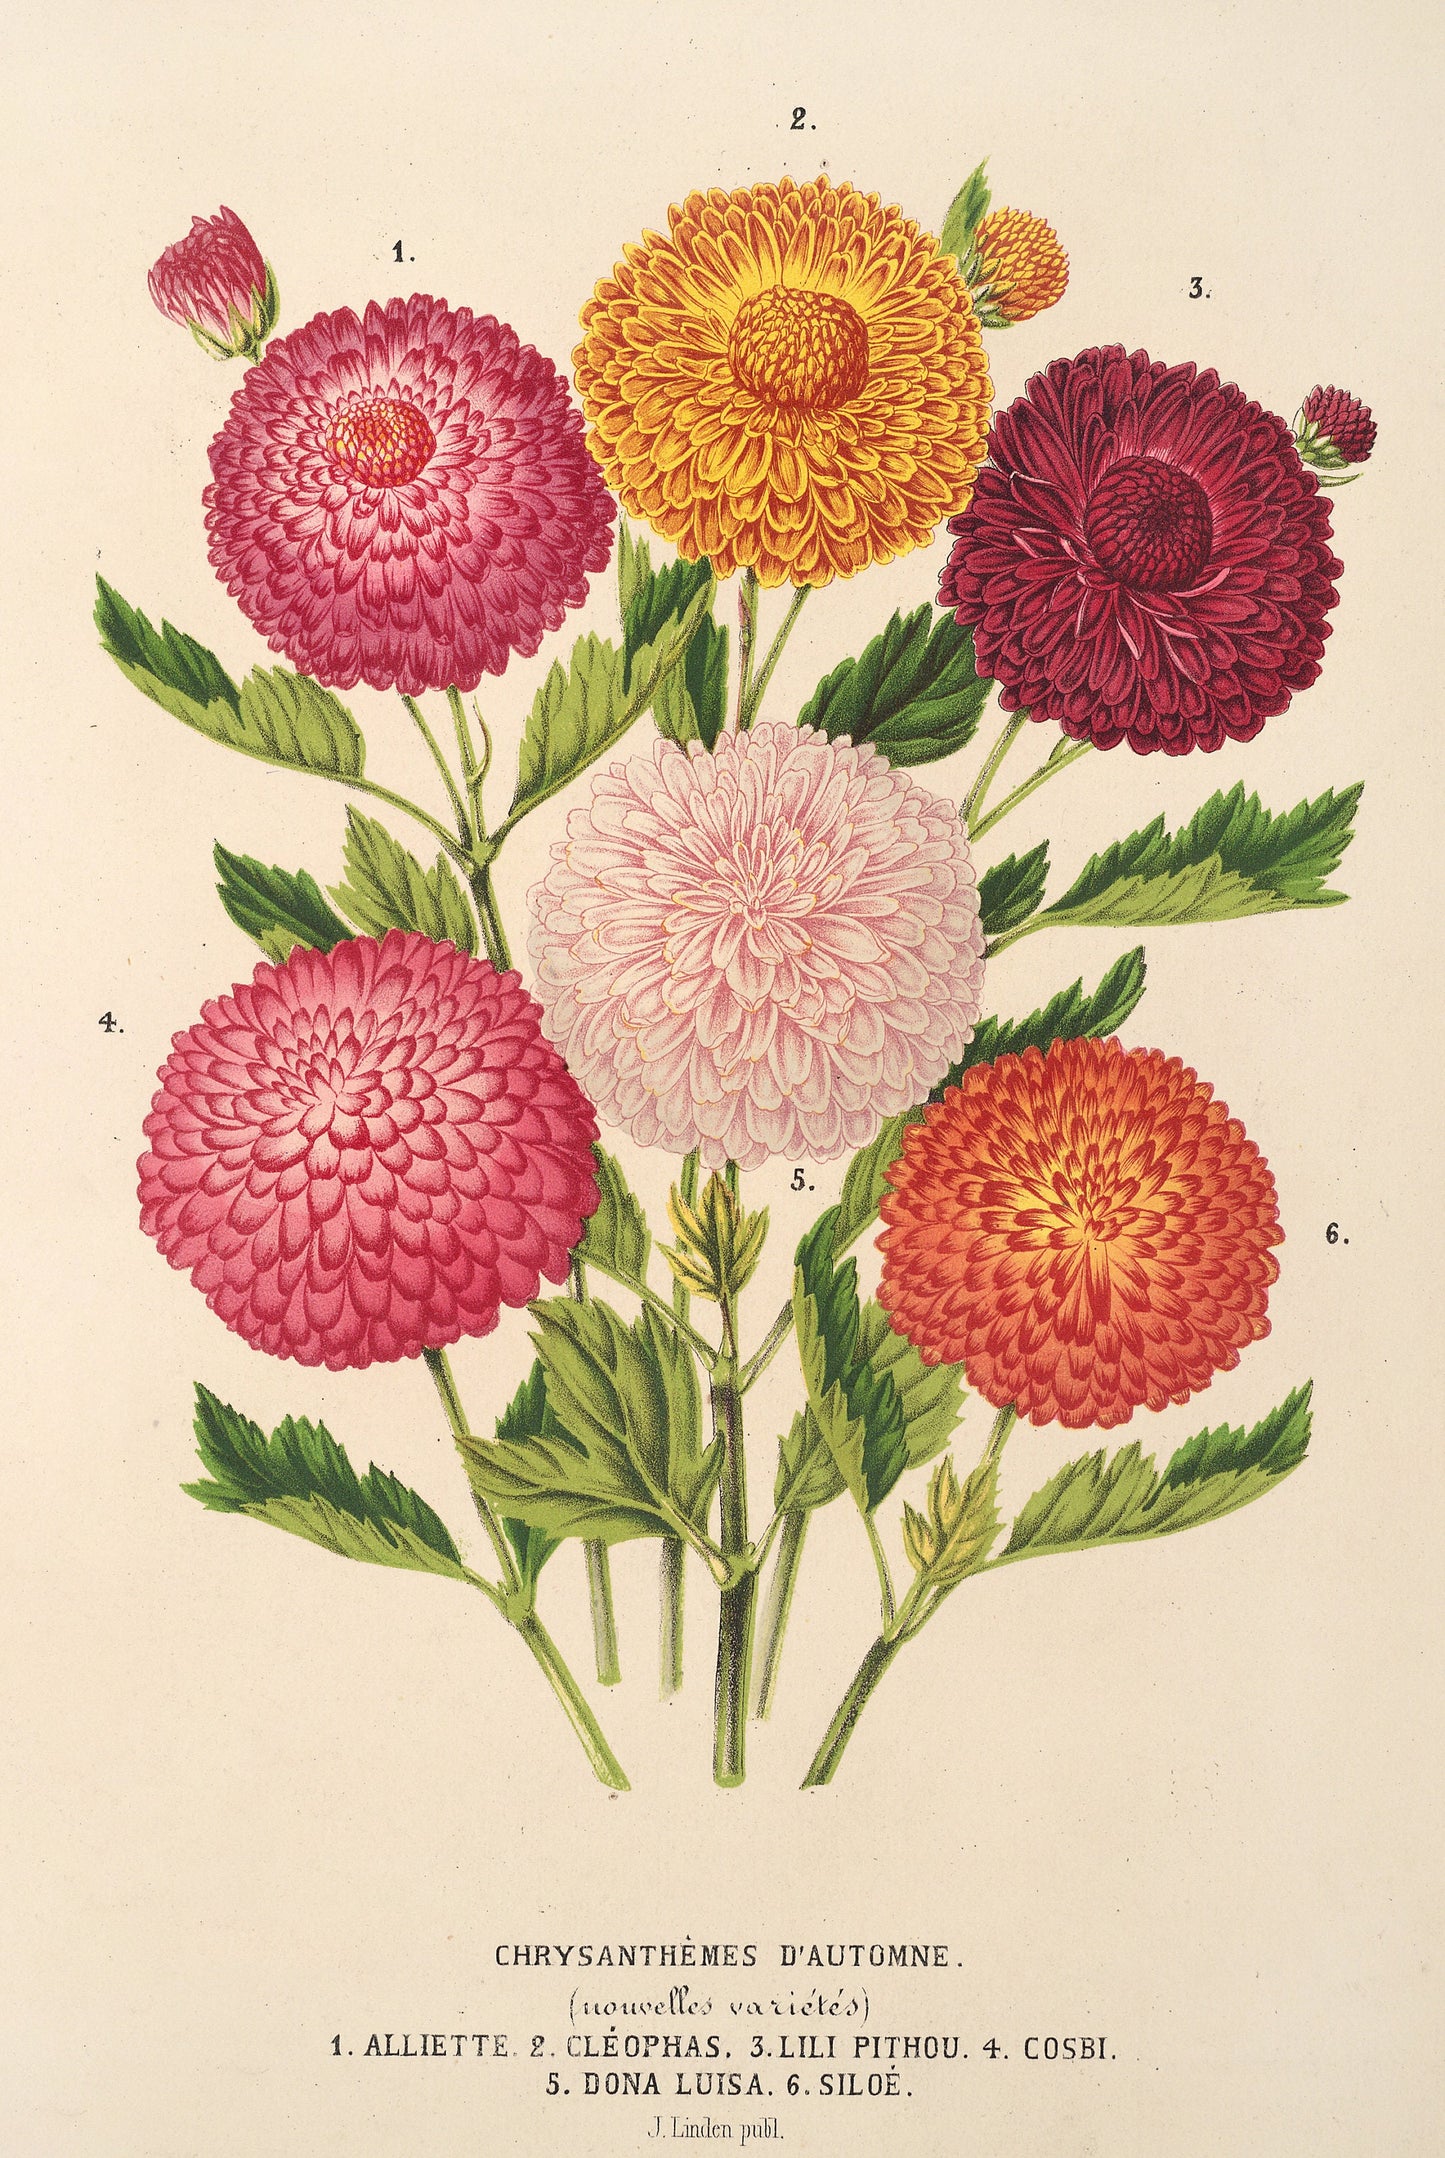 Vintage Chrysanthemums [9 Images]